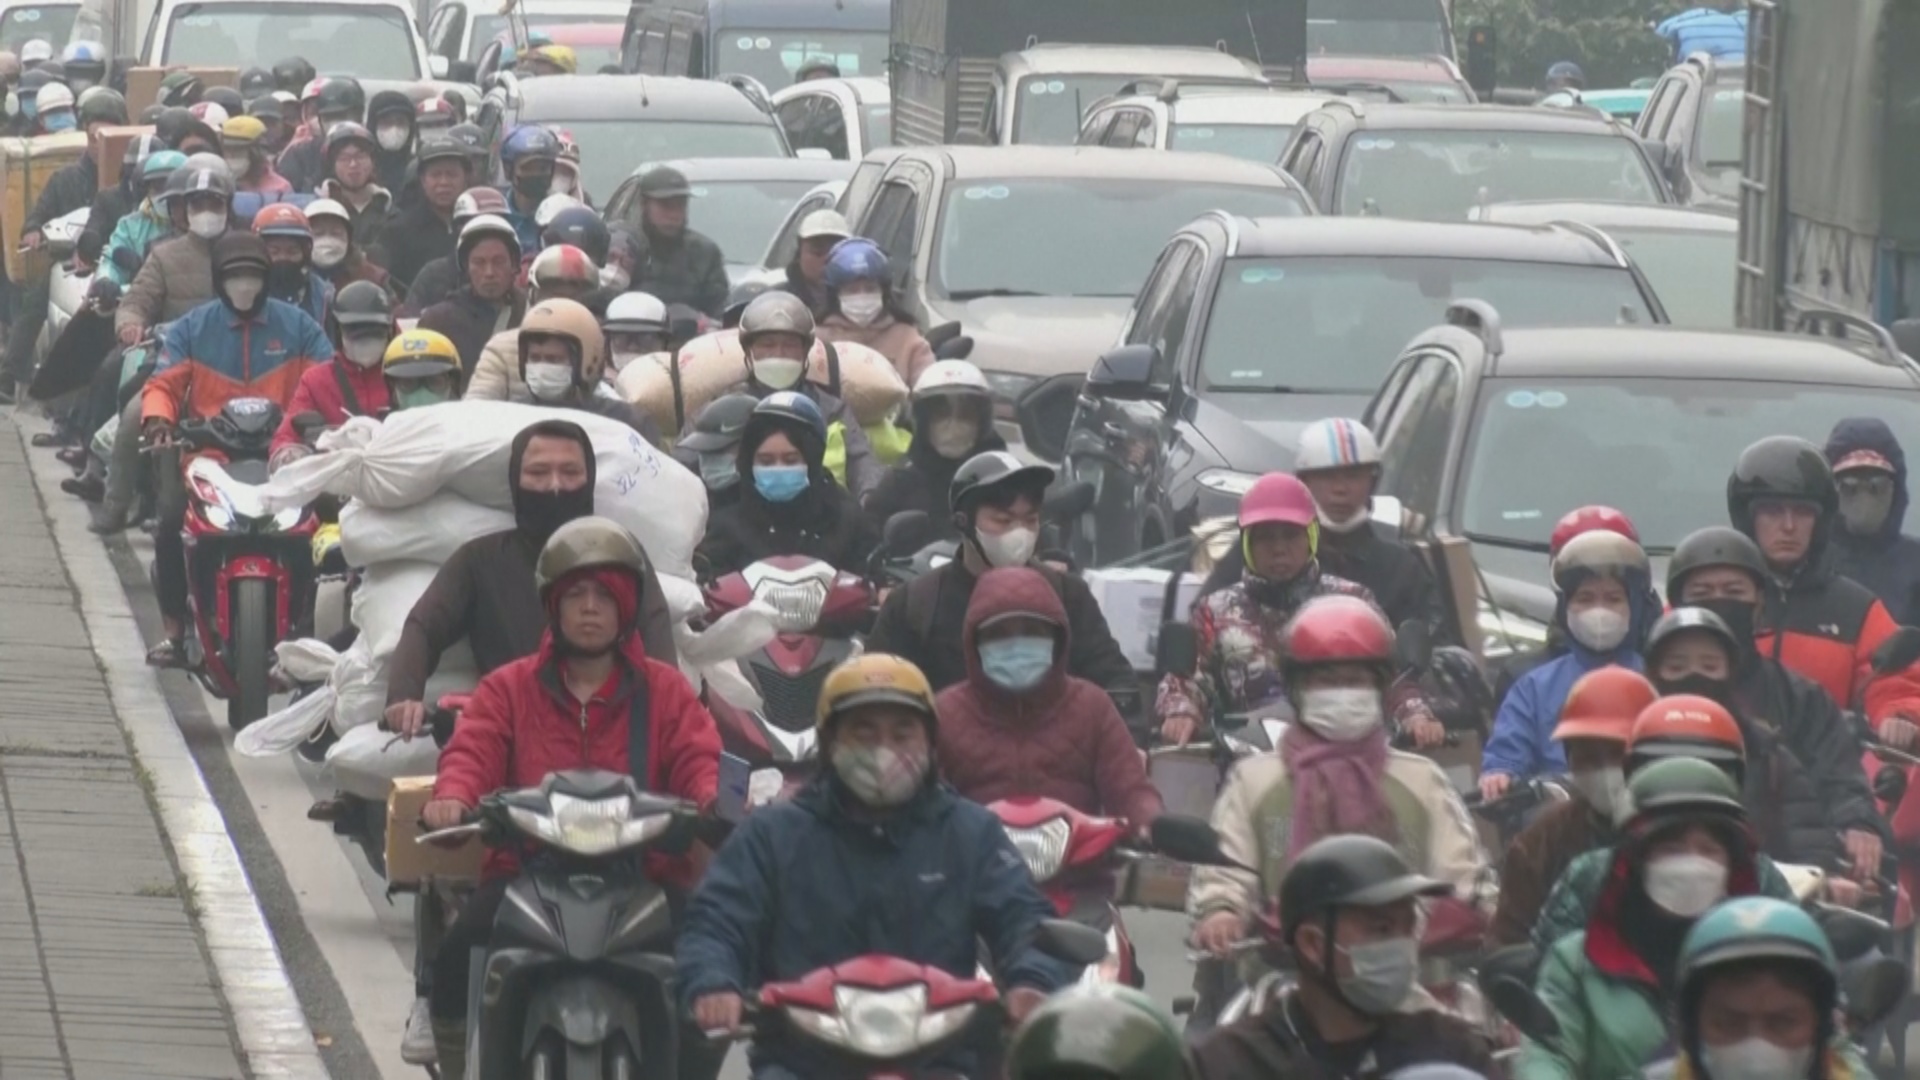 Вьетнамский Ханой возглавил список городов с самым грязным воздухом